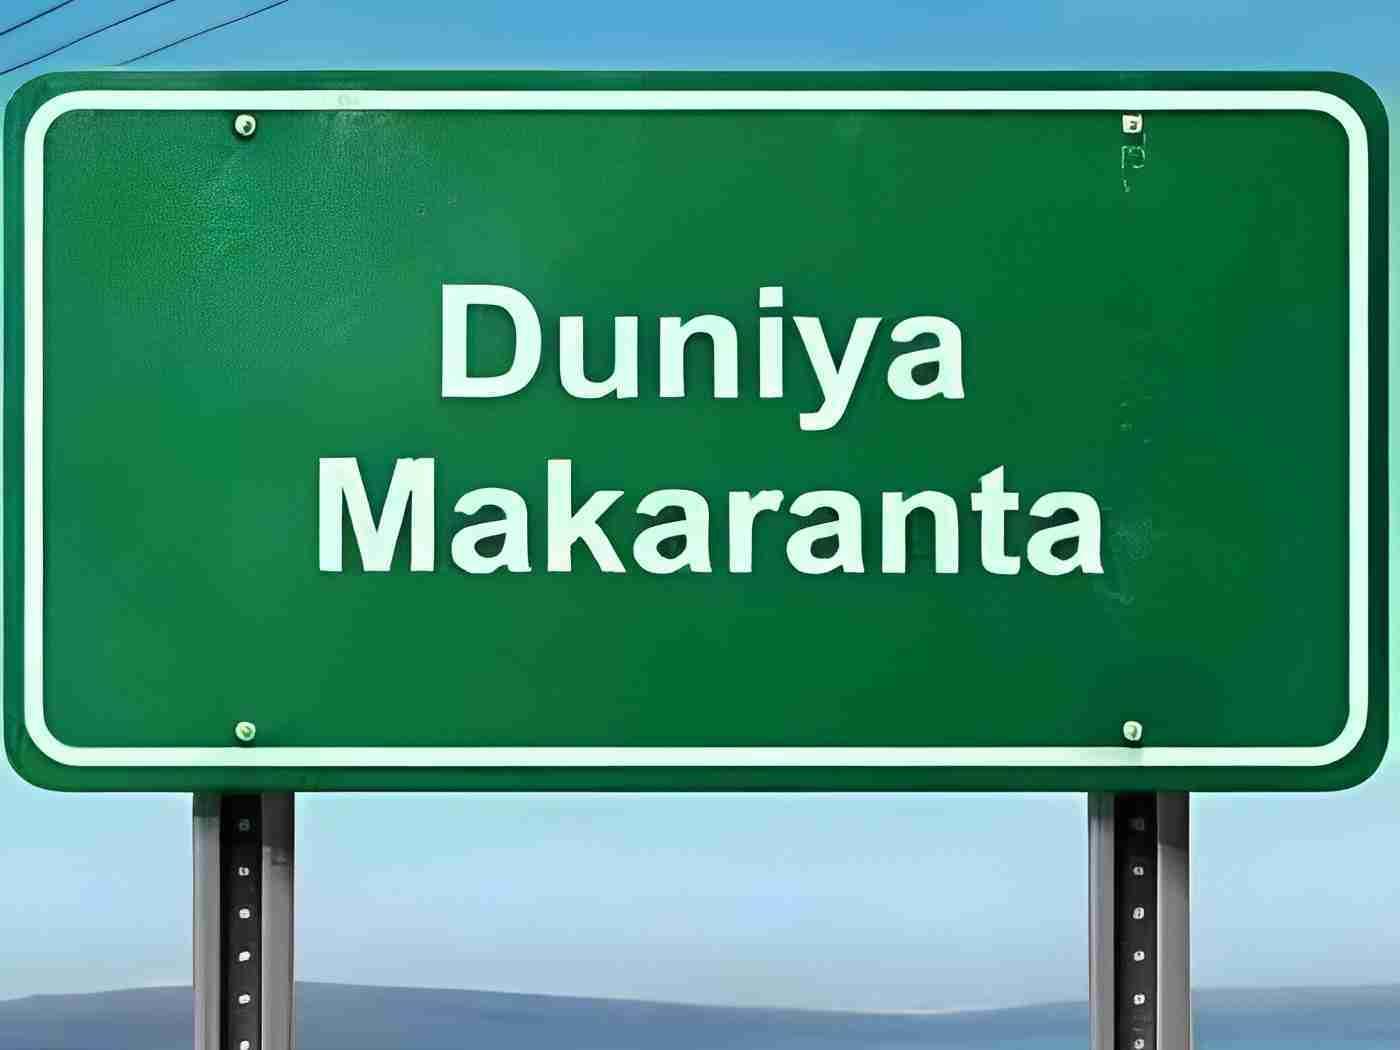 Duniya Makaranta